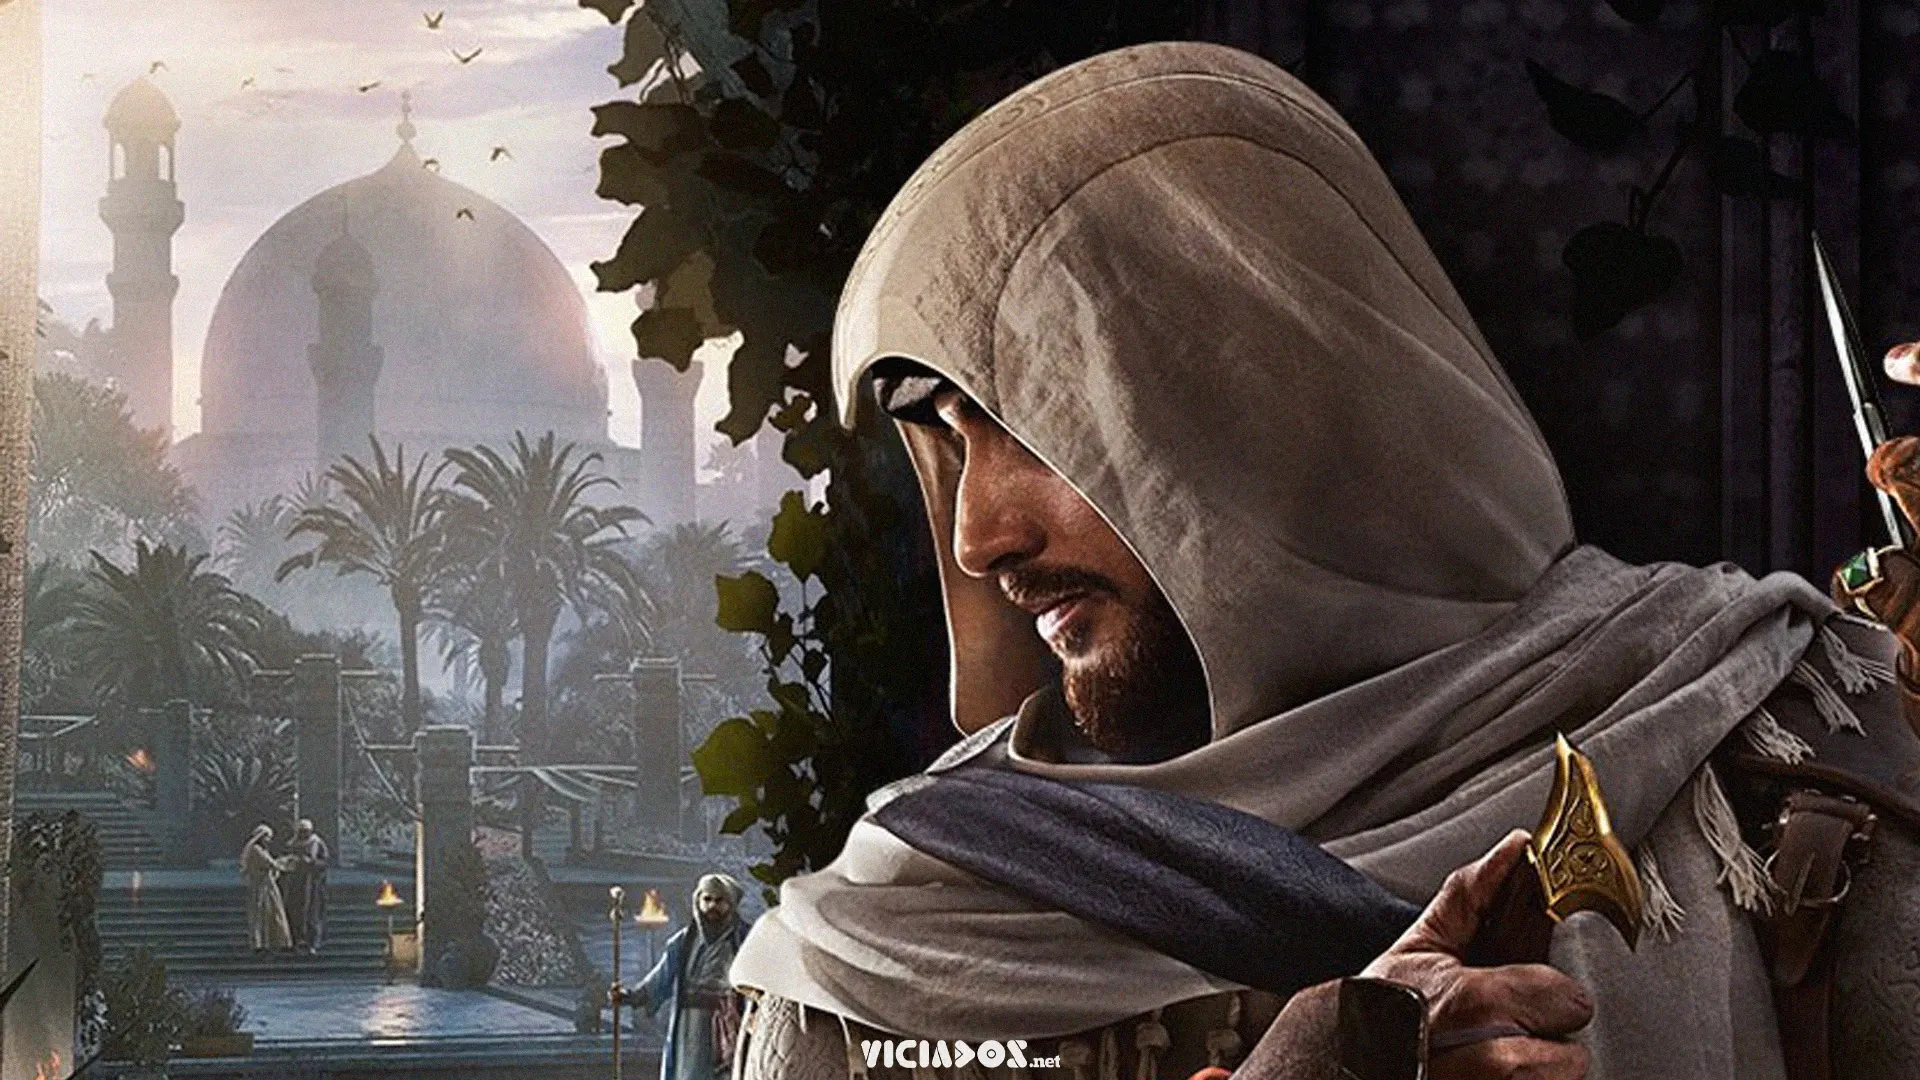 Assassin's Creed: Mirage | Vaza capa e imagens antes do evento da Ubisoft 2022 Viciados